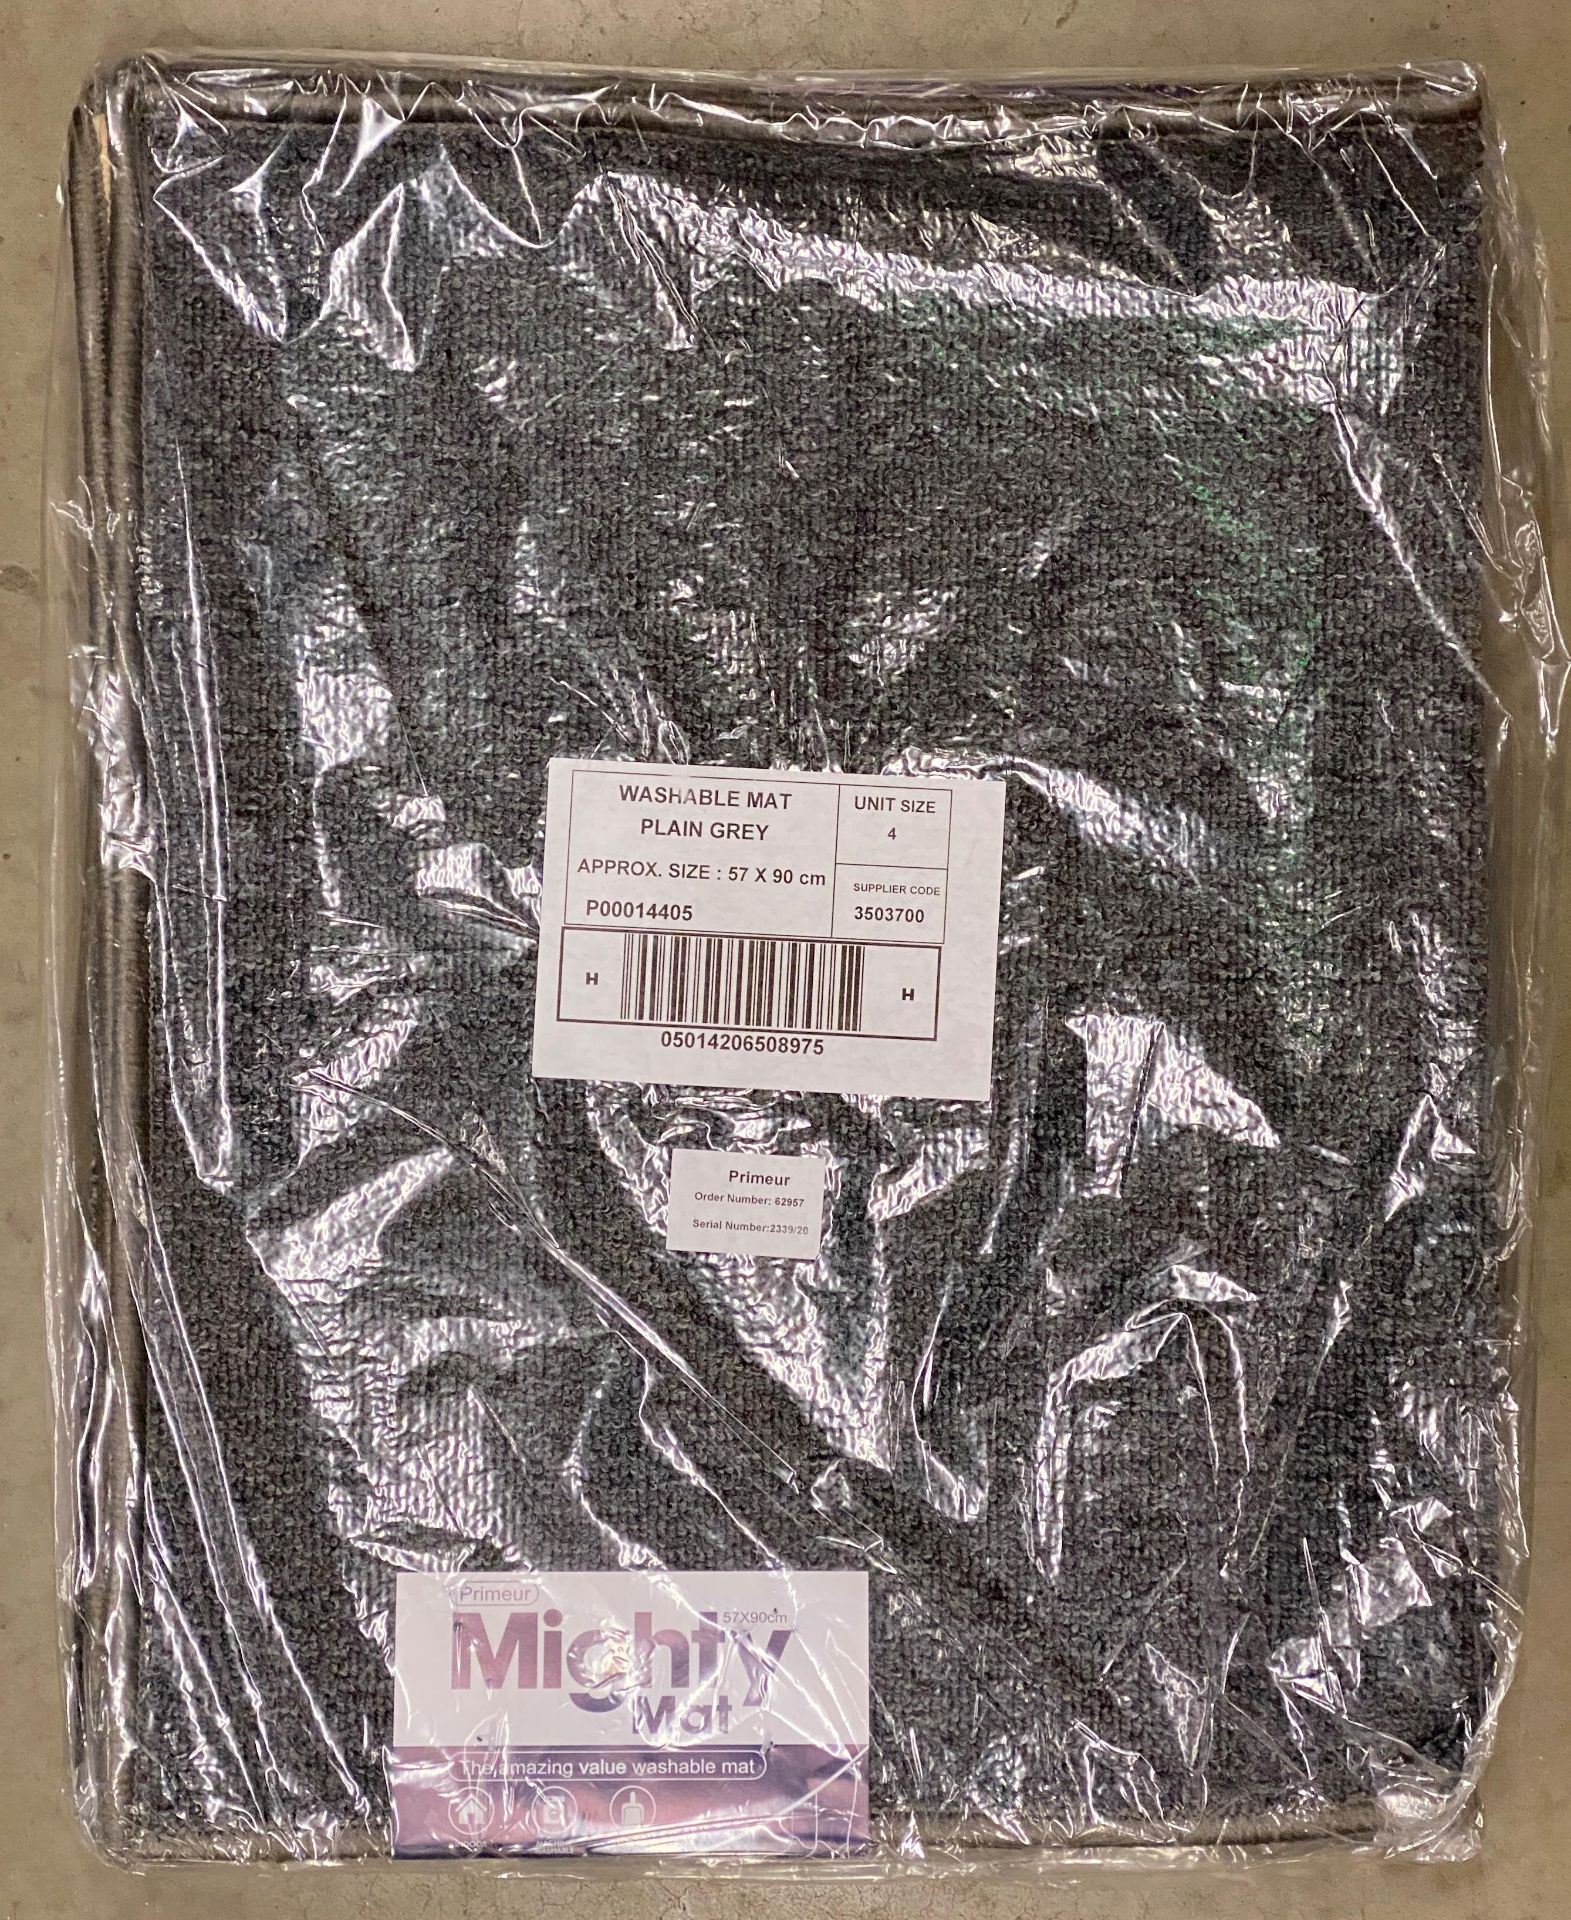 40 x Mighty Mat Grey Doormats 57cm x 90cm (10 packs of 4) (V&U04) - Image 2 of 2